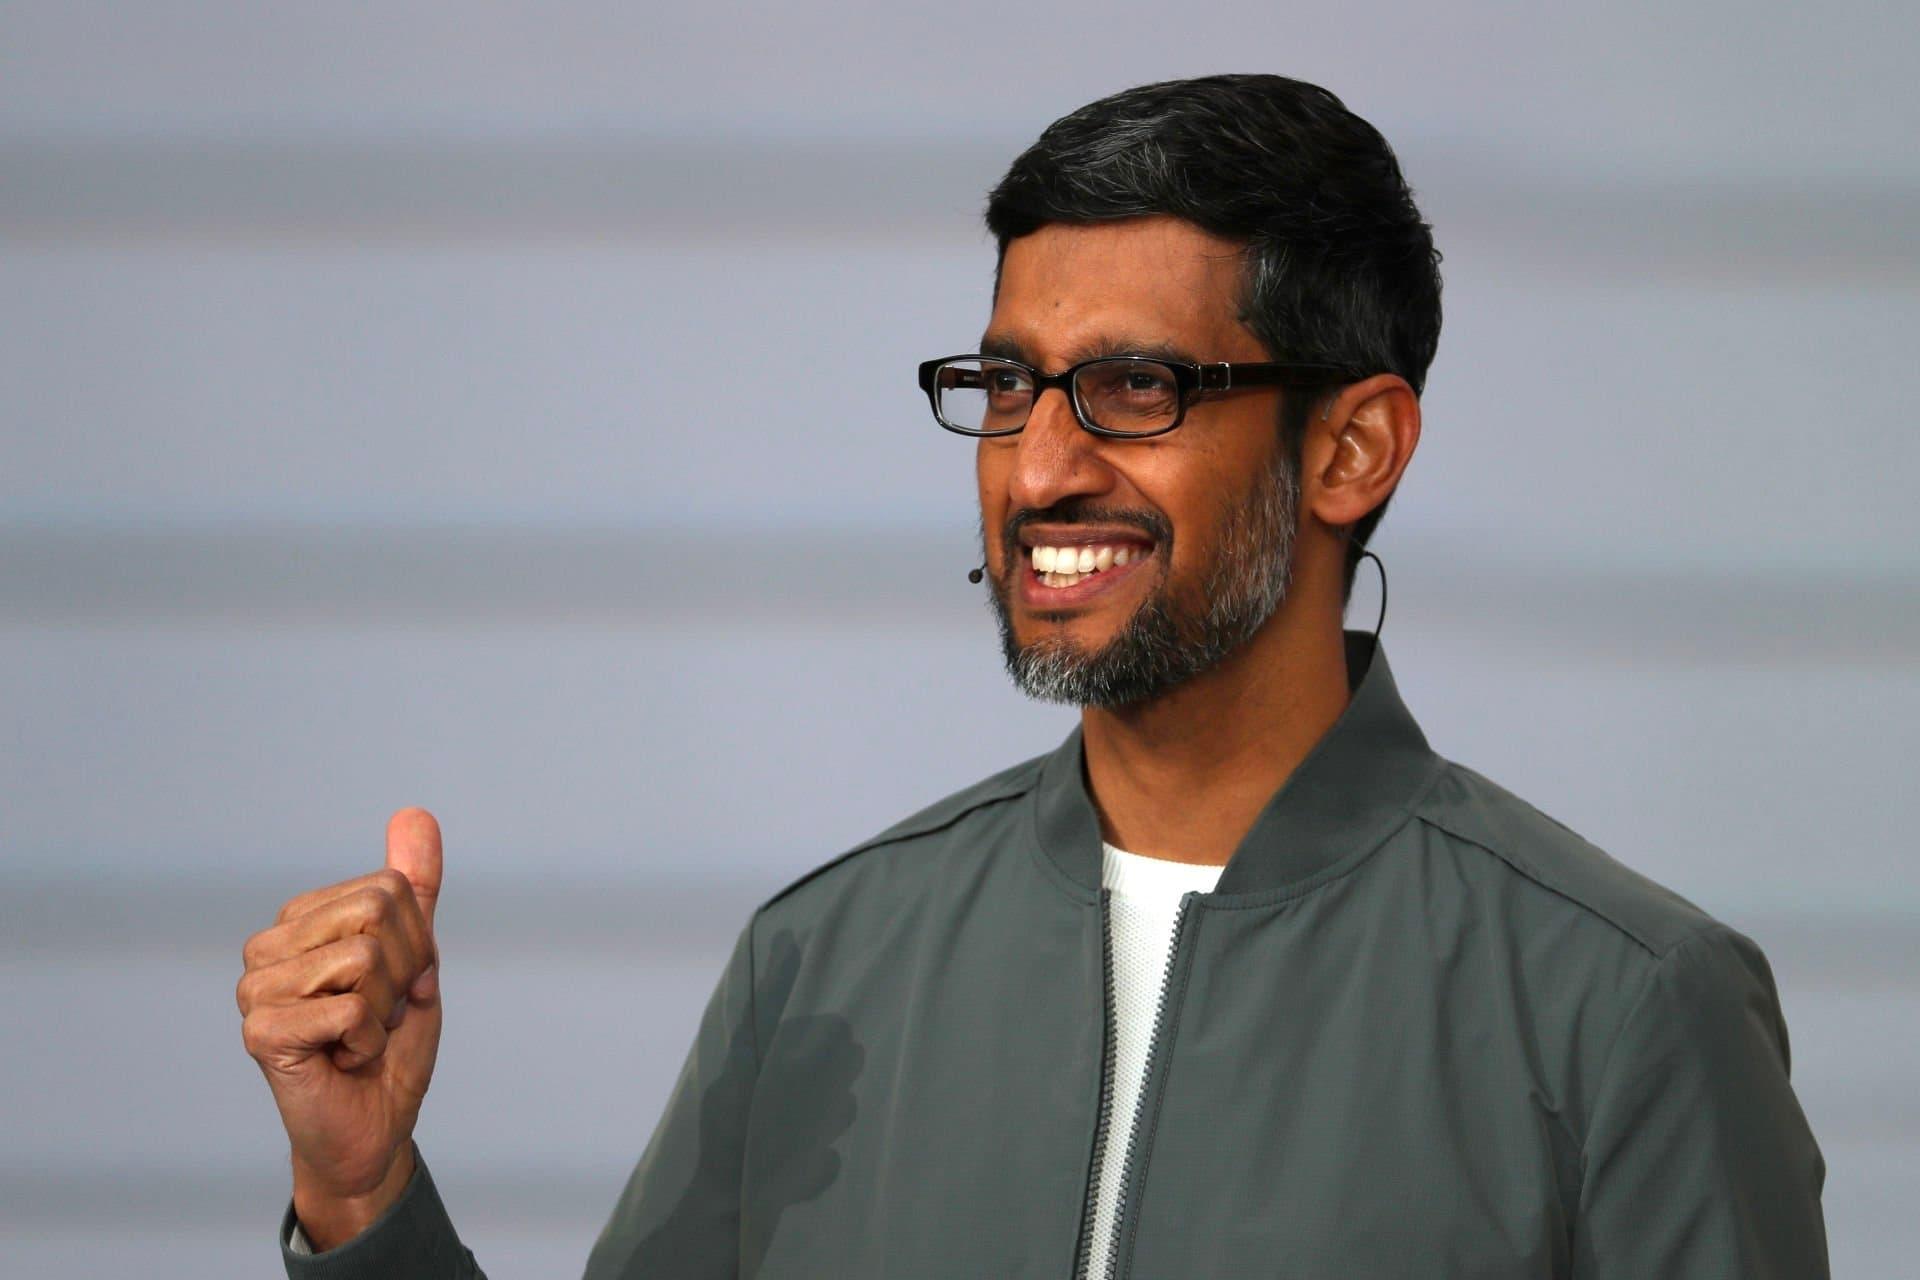 مرجع متخصصين ايران سوندار پيچاي / Sundar Pichai مديرعامل گوگل با مشت گره كرده و چهره خندان